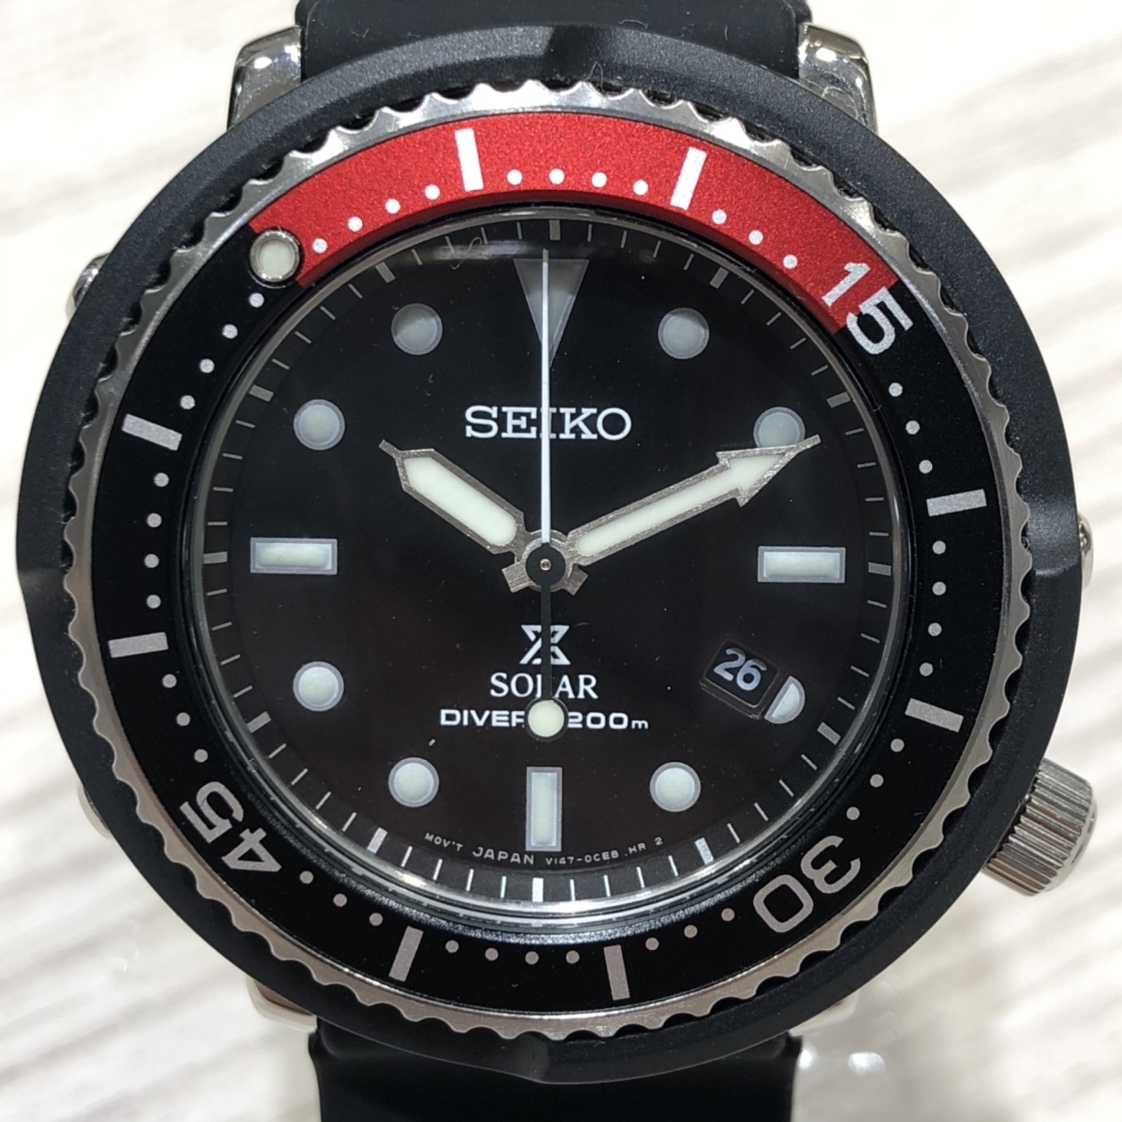 セイコーのプロスペックス 黒赤 STBR009 LOWERCASE 2000本限定モデル クオーツ時計の買取実績です。